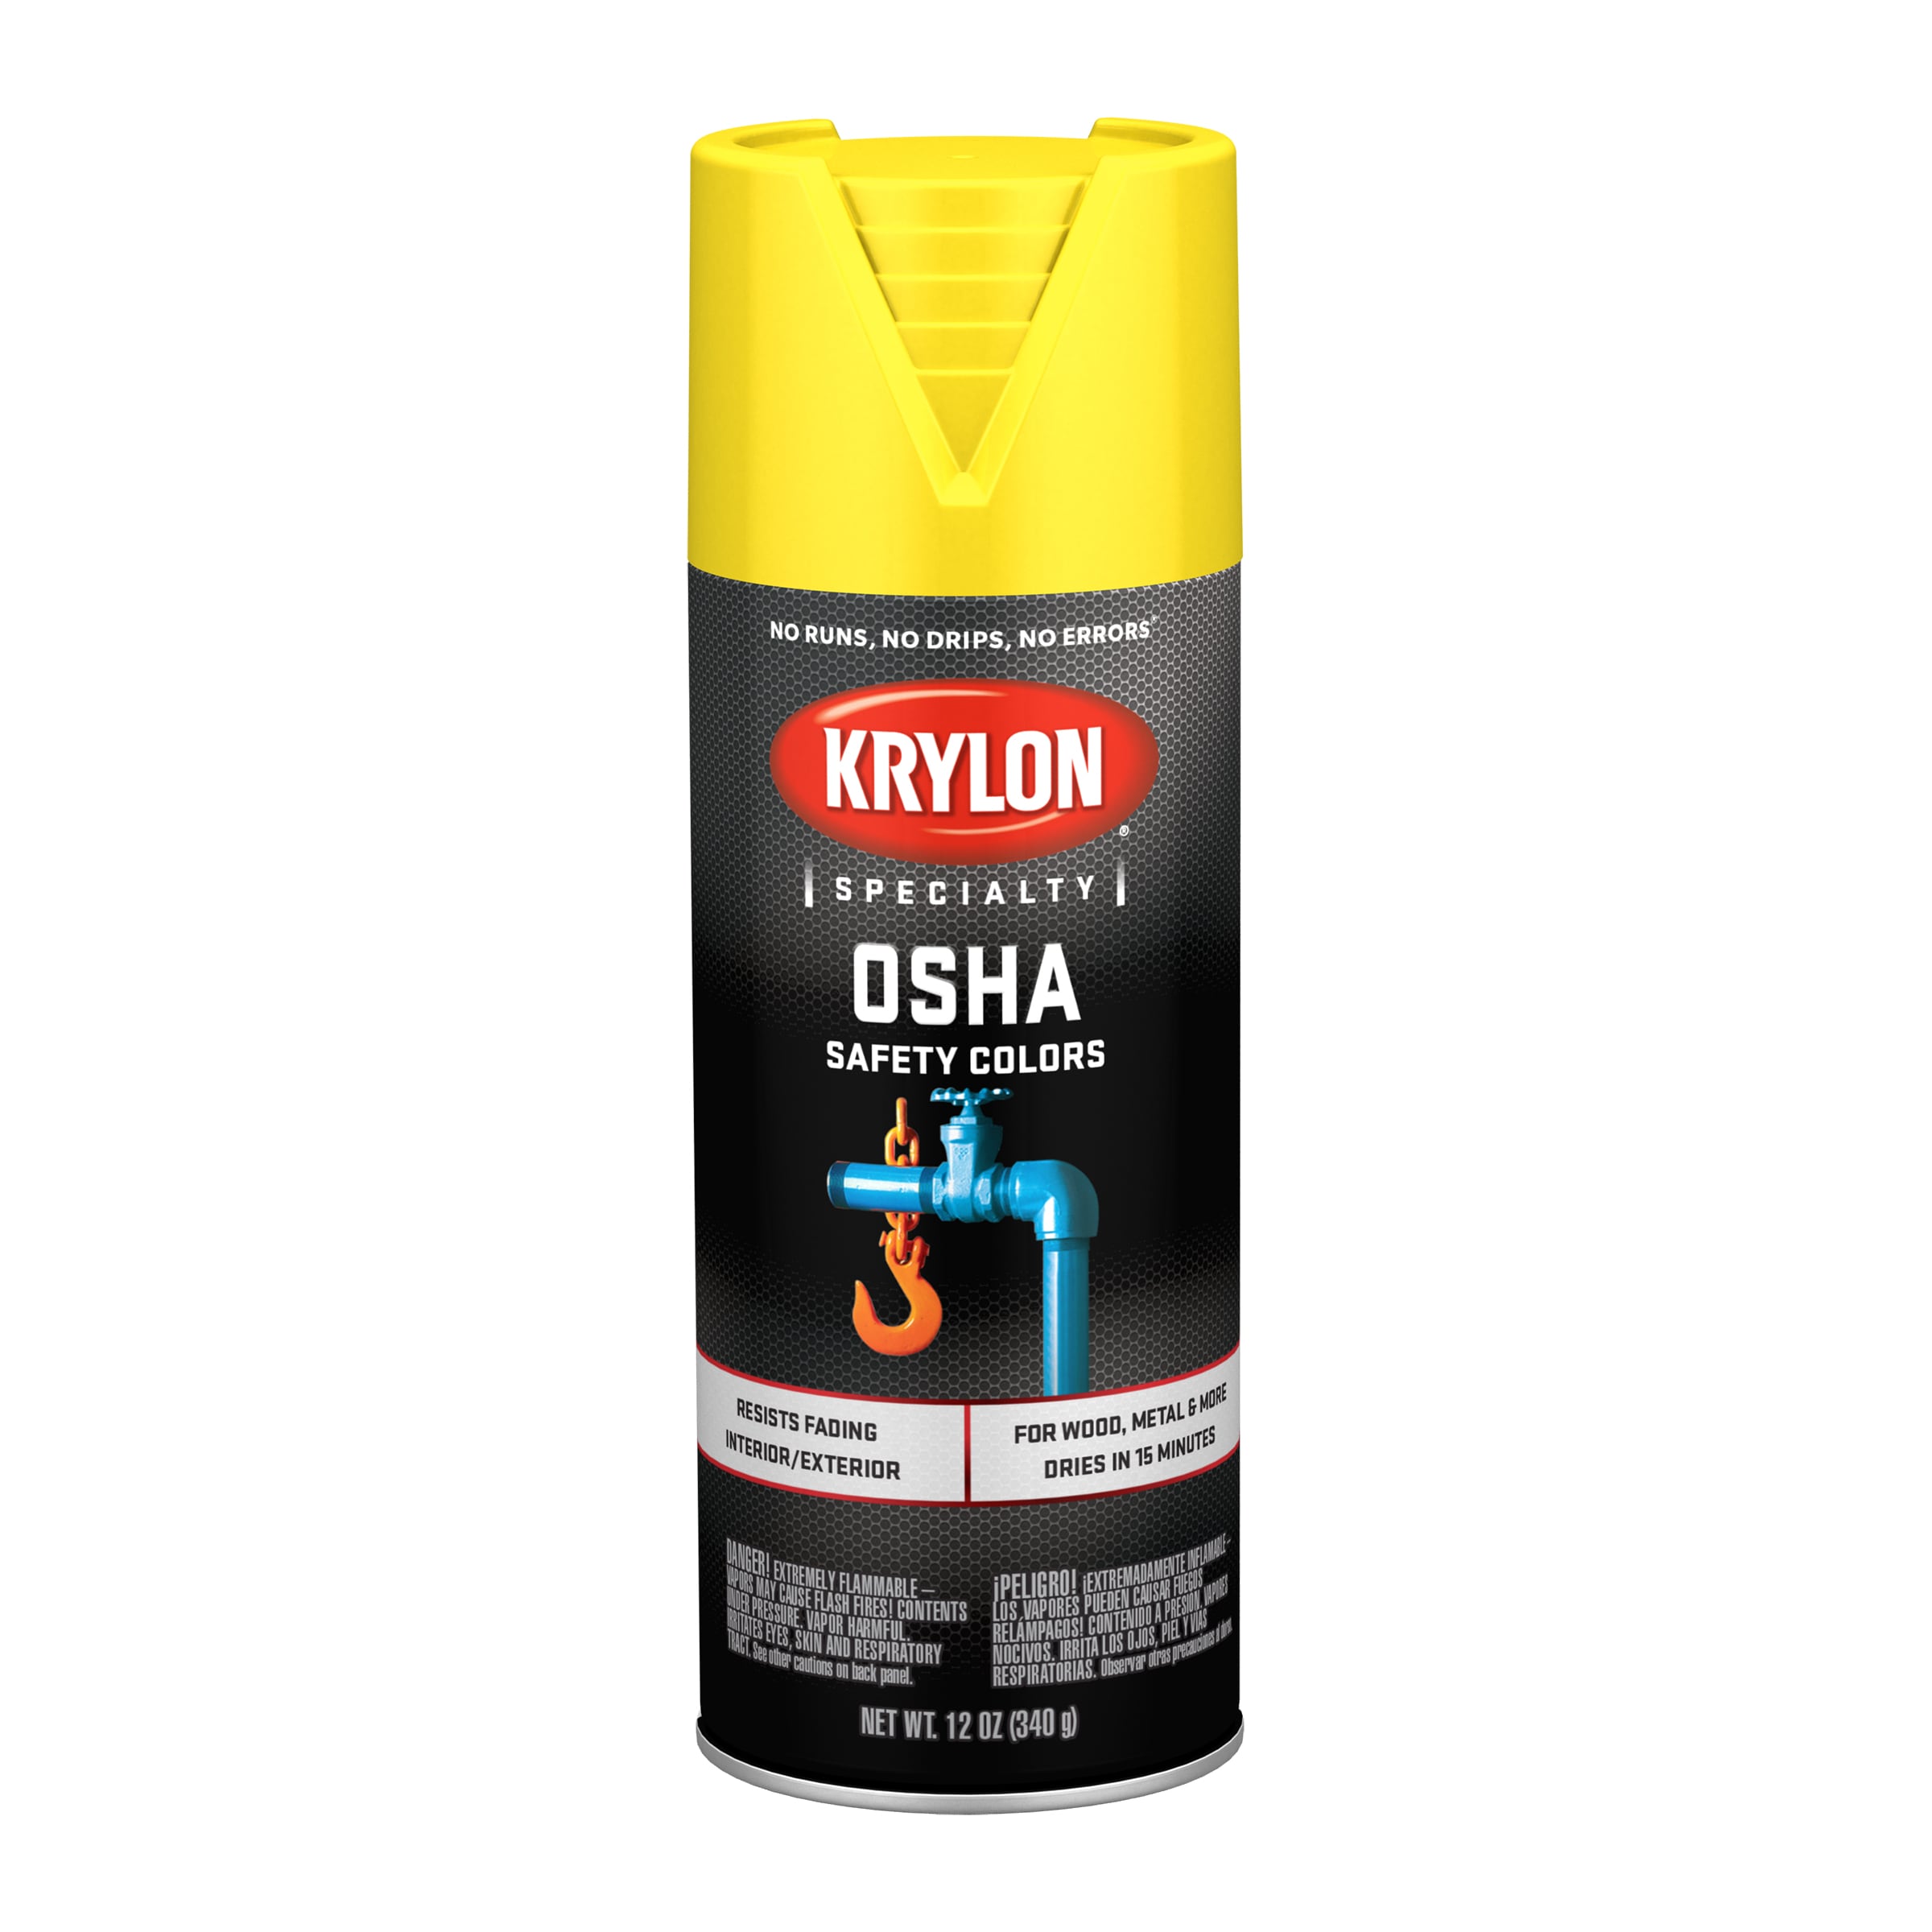 Krylon, Pro Marking Spray Paint in 13 colors